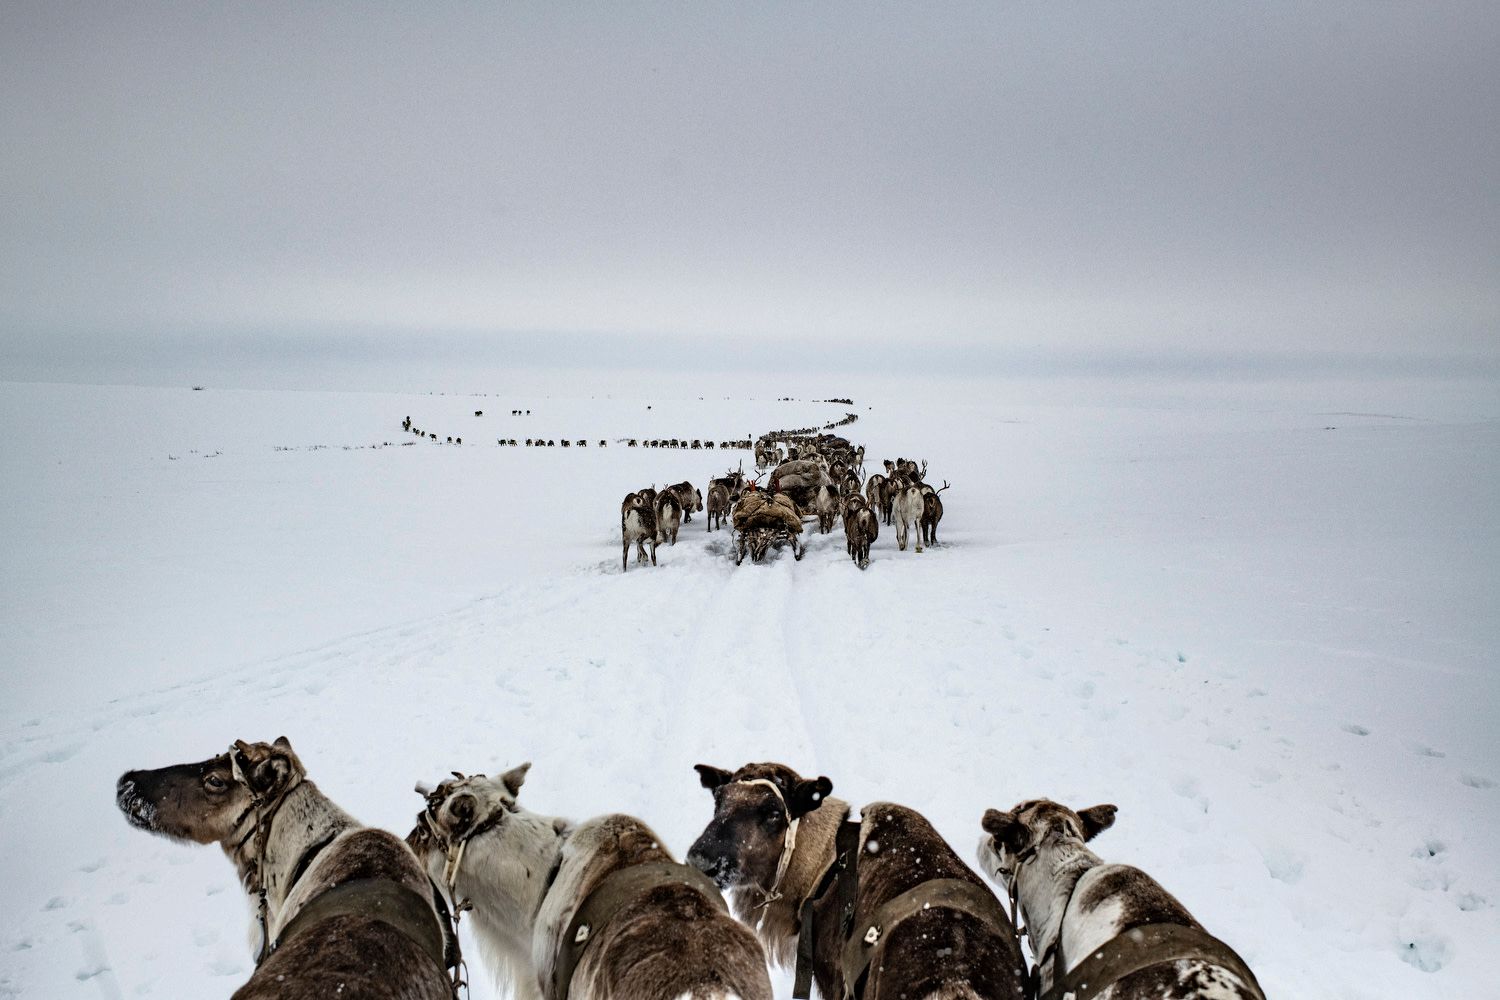 Péninsule de Yamal, district autonome de Iamalo-Nénétsie, Russie, avril 2018. Les Serotetto, une famille d'éleveurs nénètses (officiellement la huitième brigade de la ferme d'État de Yar-Sale), mènent leurs rennes des pâturages d'hiver aux pâturages d'été, plus au nord. Les hardes de rennes peuvent compter de 50 à 7 000 têtes. Les migrations dépendent de la saison et de la pérennité des prairies de lichen dont ils se nourrissent.